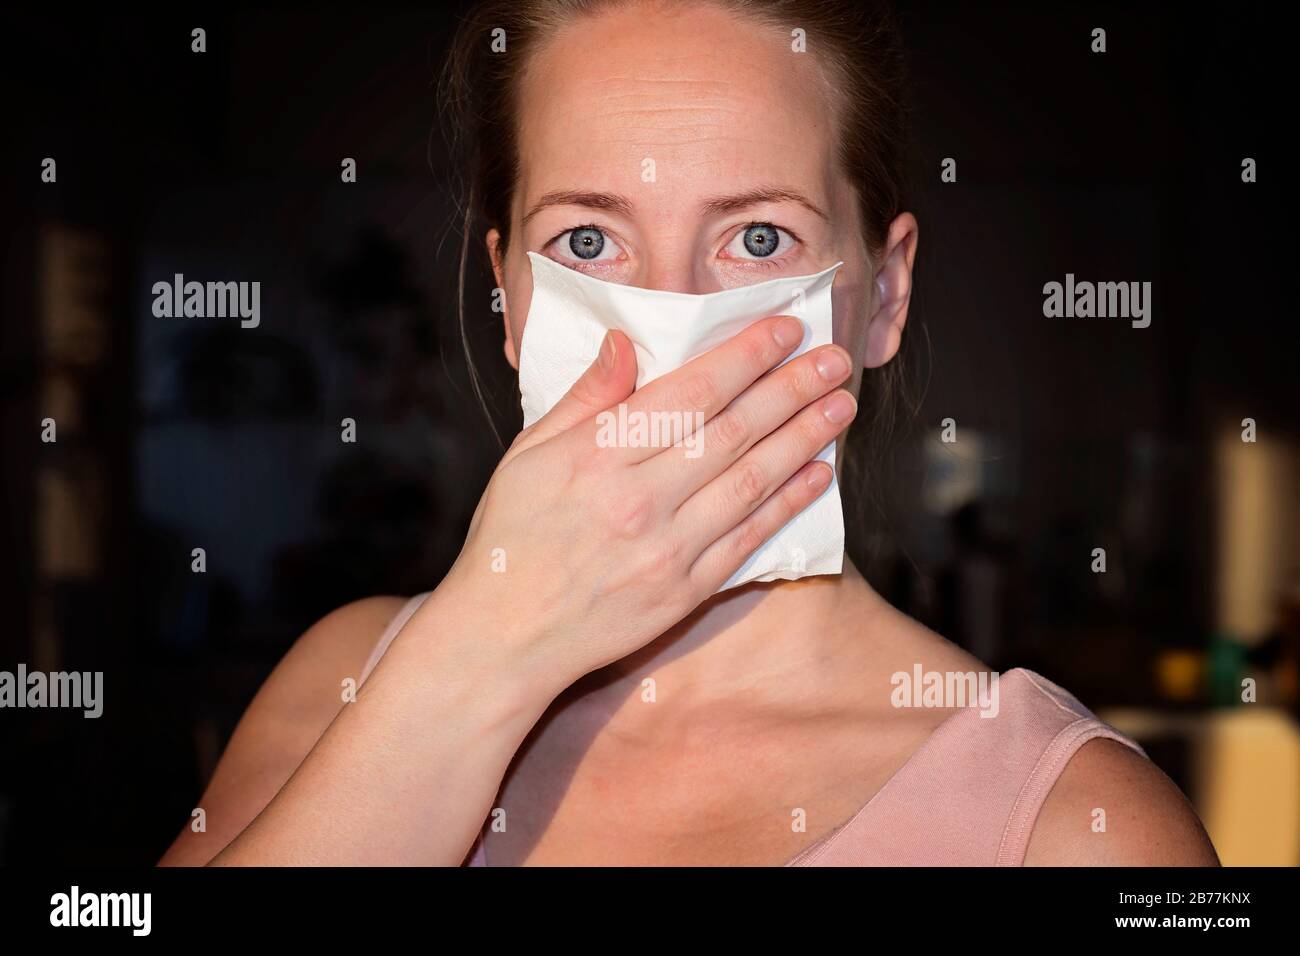 Protéger contre le Coronavirus. Une femme scandinave qui protège sa bouche pour arrêter l'éclosion du virus corona. Le virus Corona et les symptômes du virus épidémique de Wuhan Banque D'Images